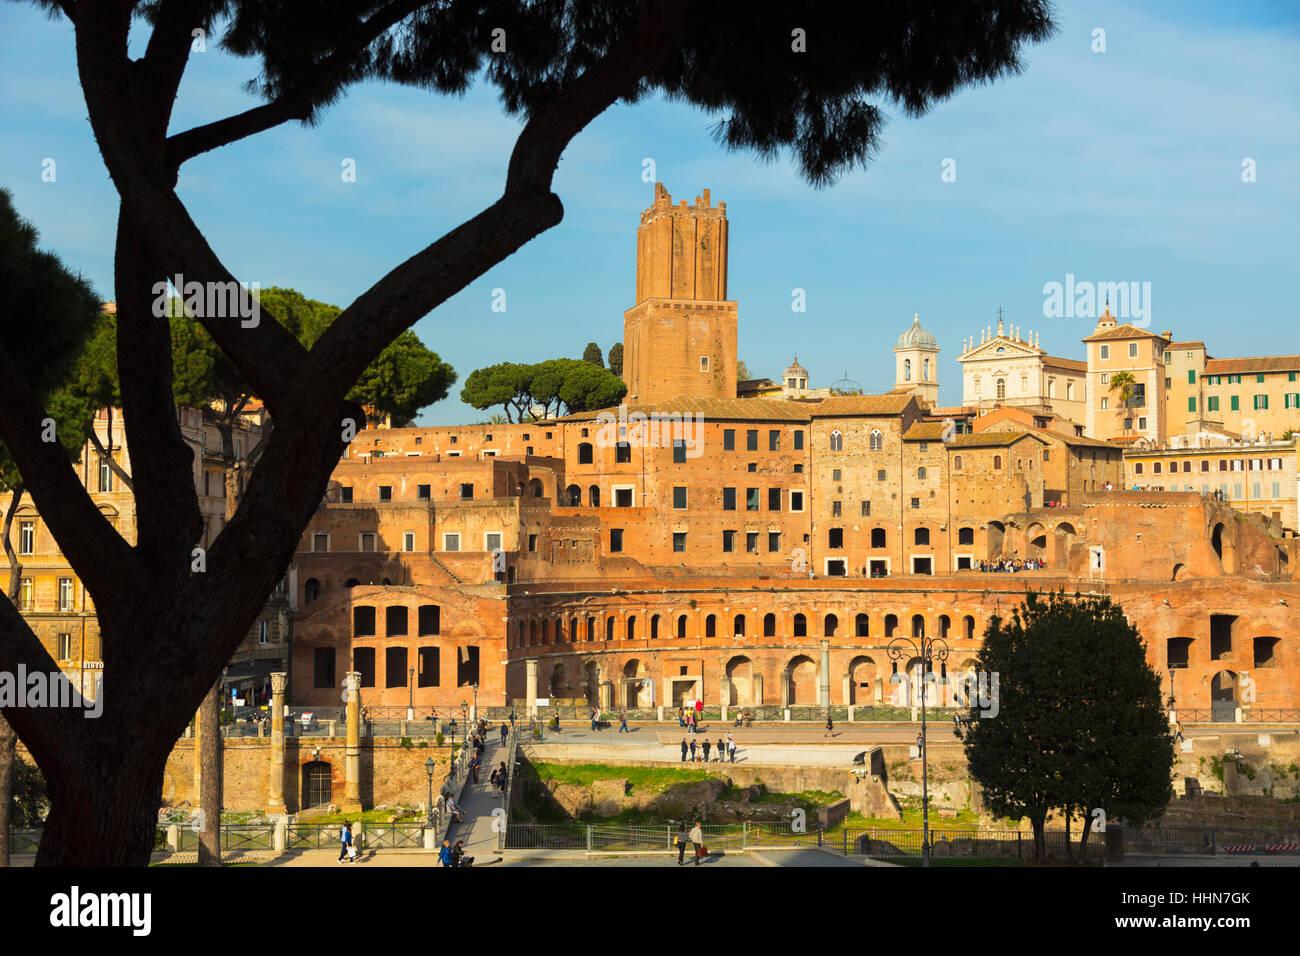 Roma, Italia. Il Foro di Traiano. Il centro storico di Roma è un sito Patrimonio Mondiale dell'UNESCO. Foto Stock